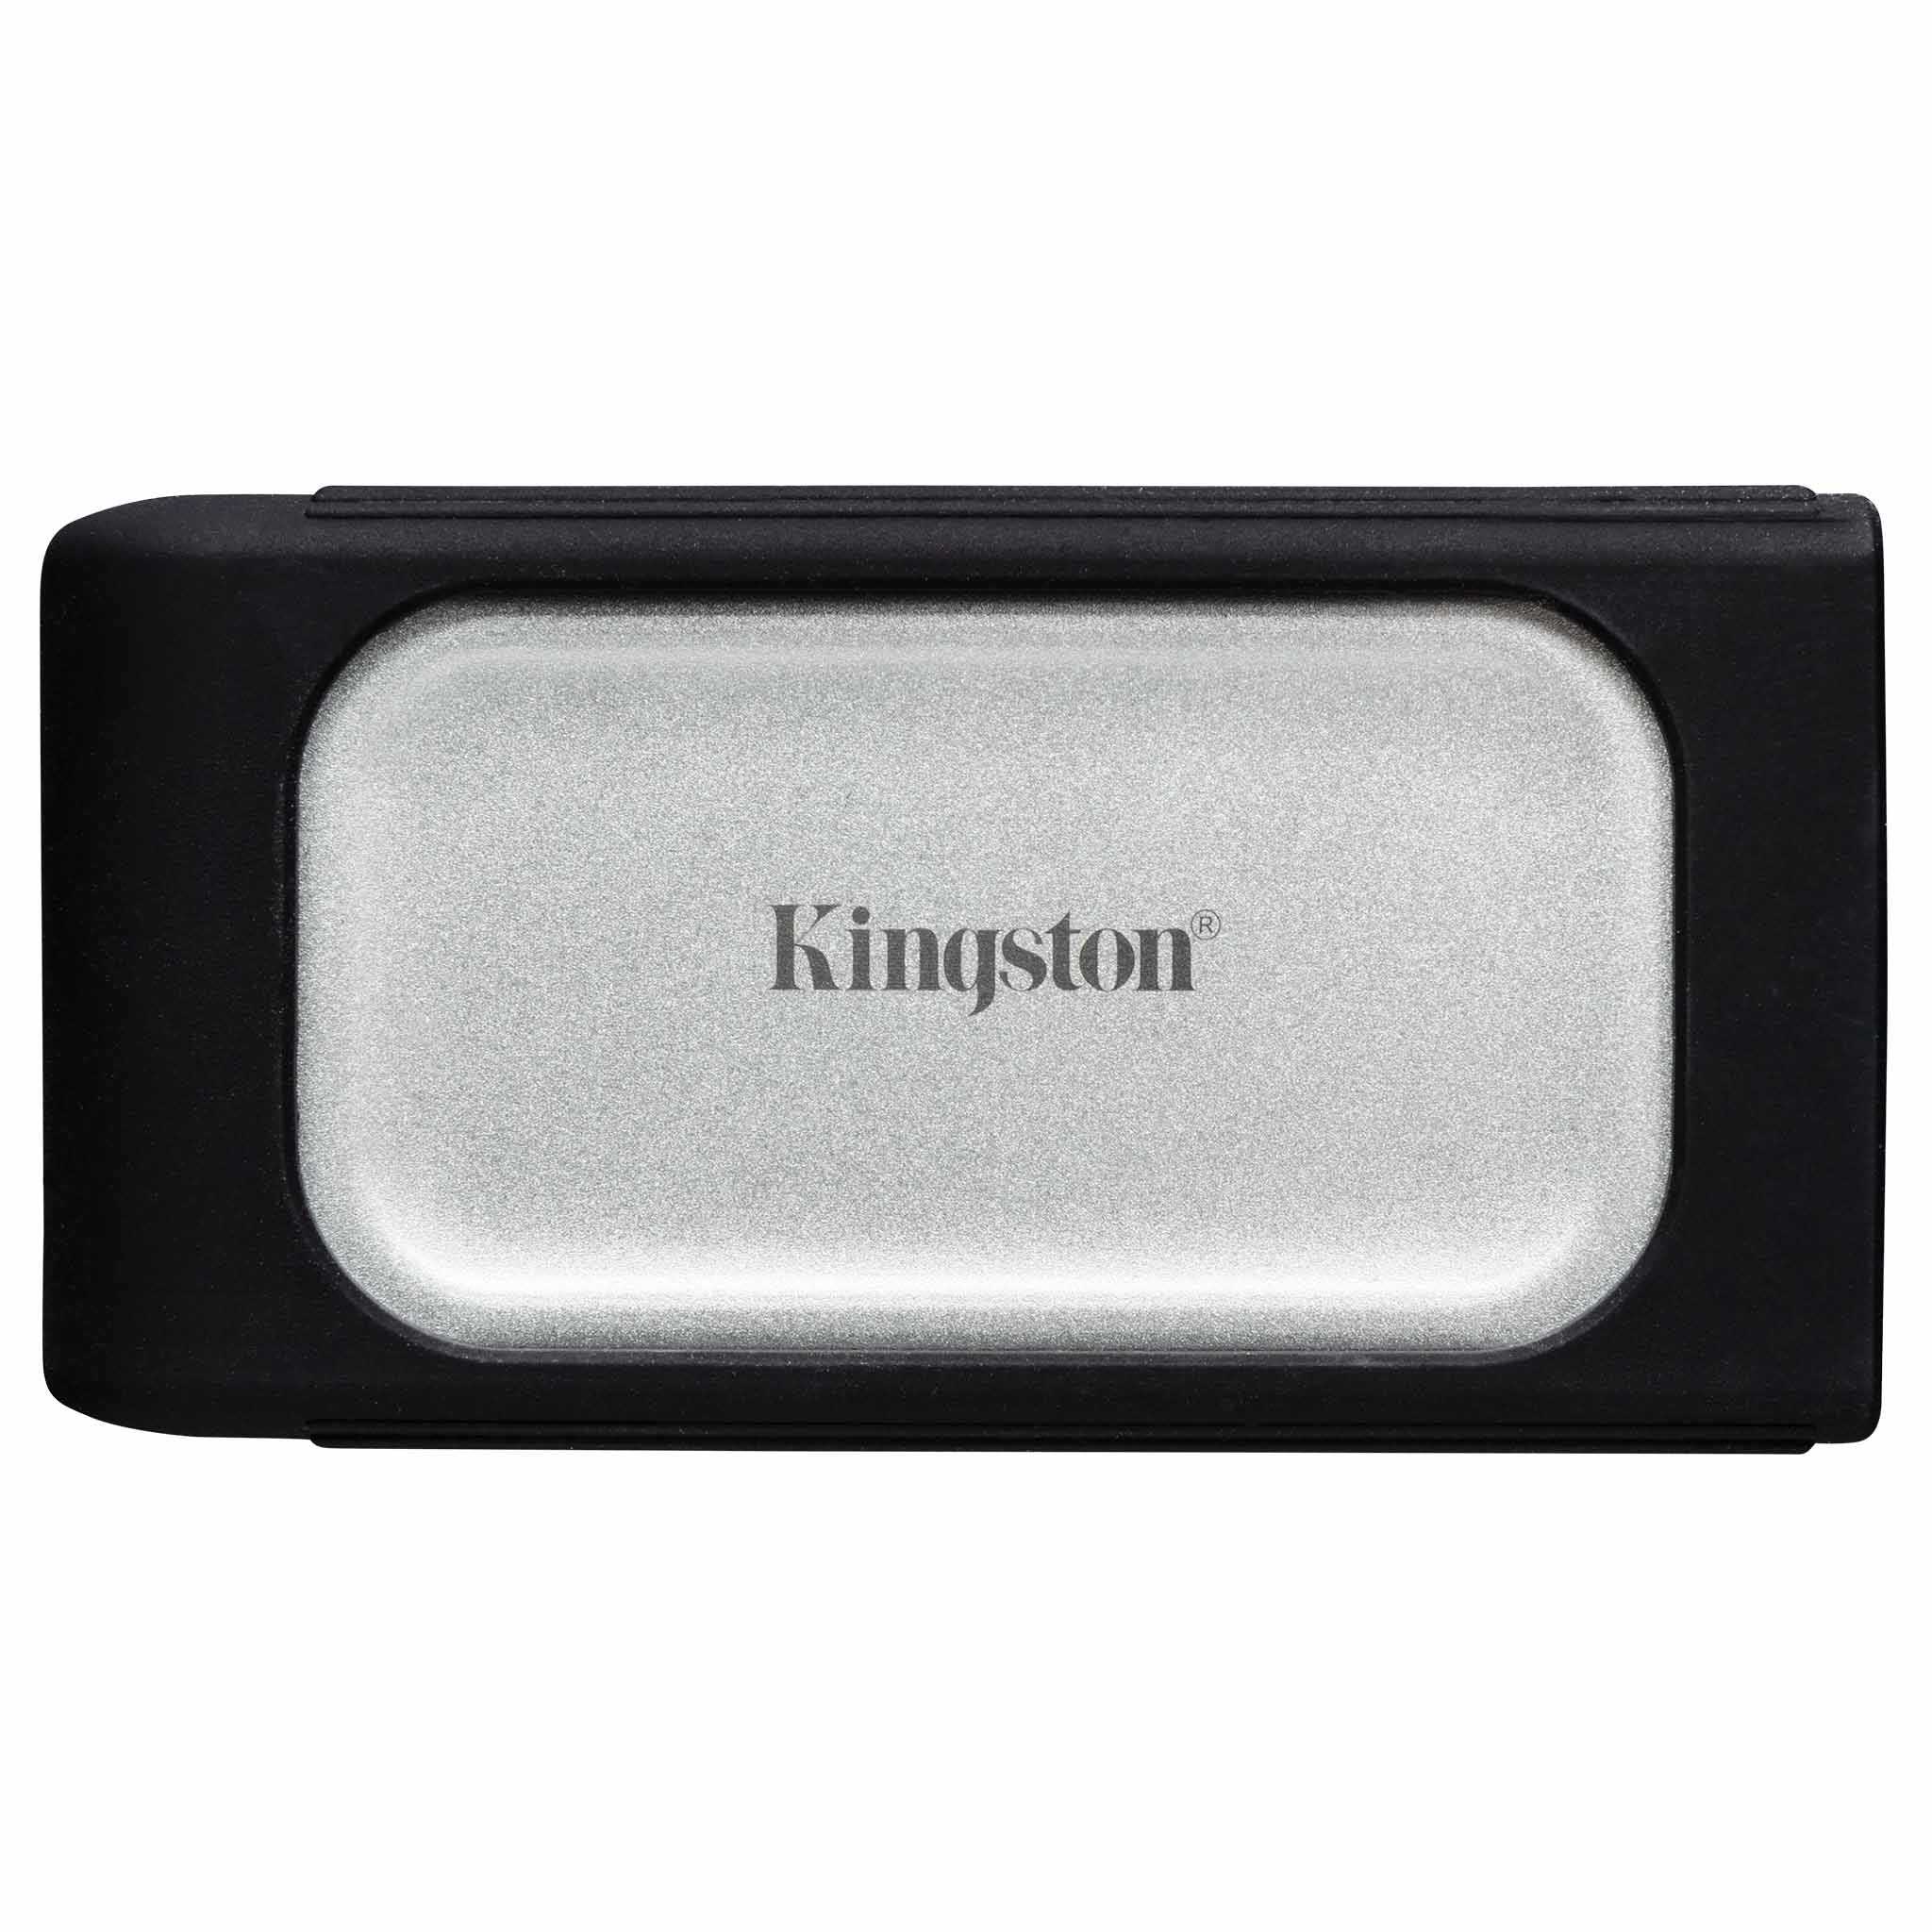 Kingston’s XS2000 Portable SSD 500GB